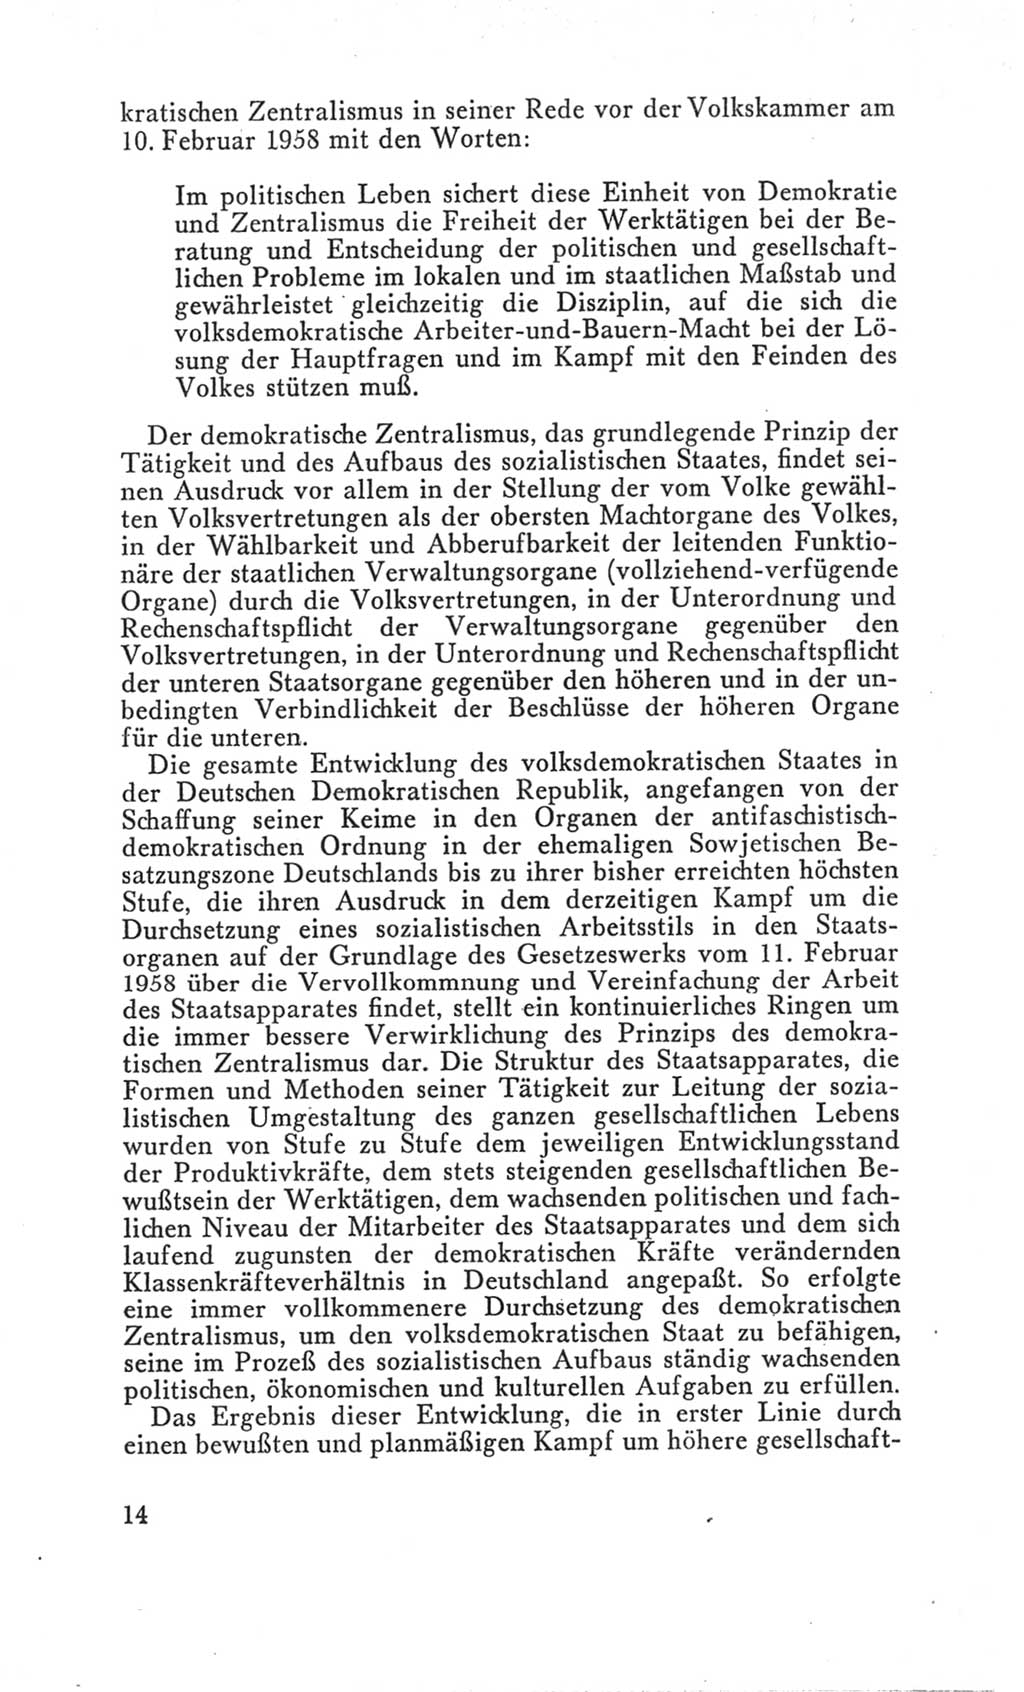 Handbuch der Volkskammer (VK) der Deutschen Demokratischen Republik (DDR), 3. Wahlperiode 1958-1963, Seite 14 (Hdb. VK. DDR 3. WP. 1958-1963, S. 14)